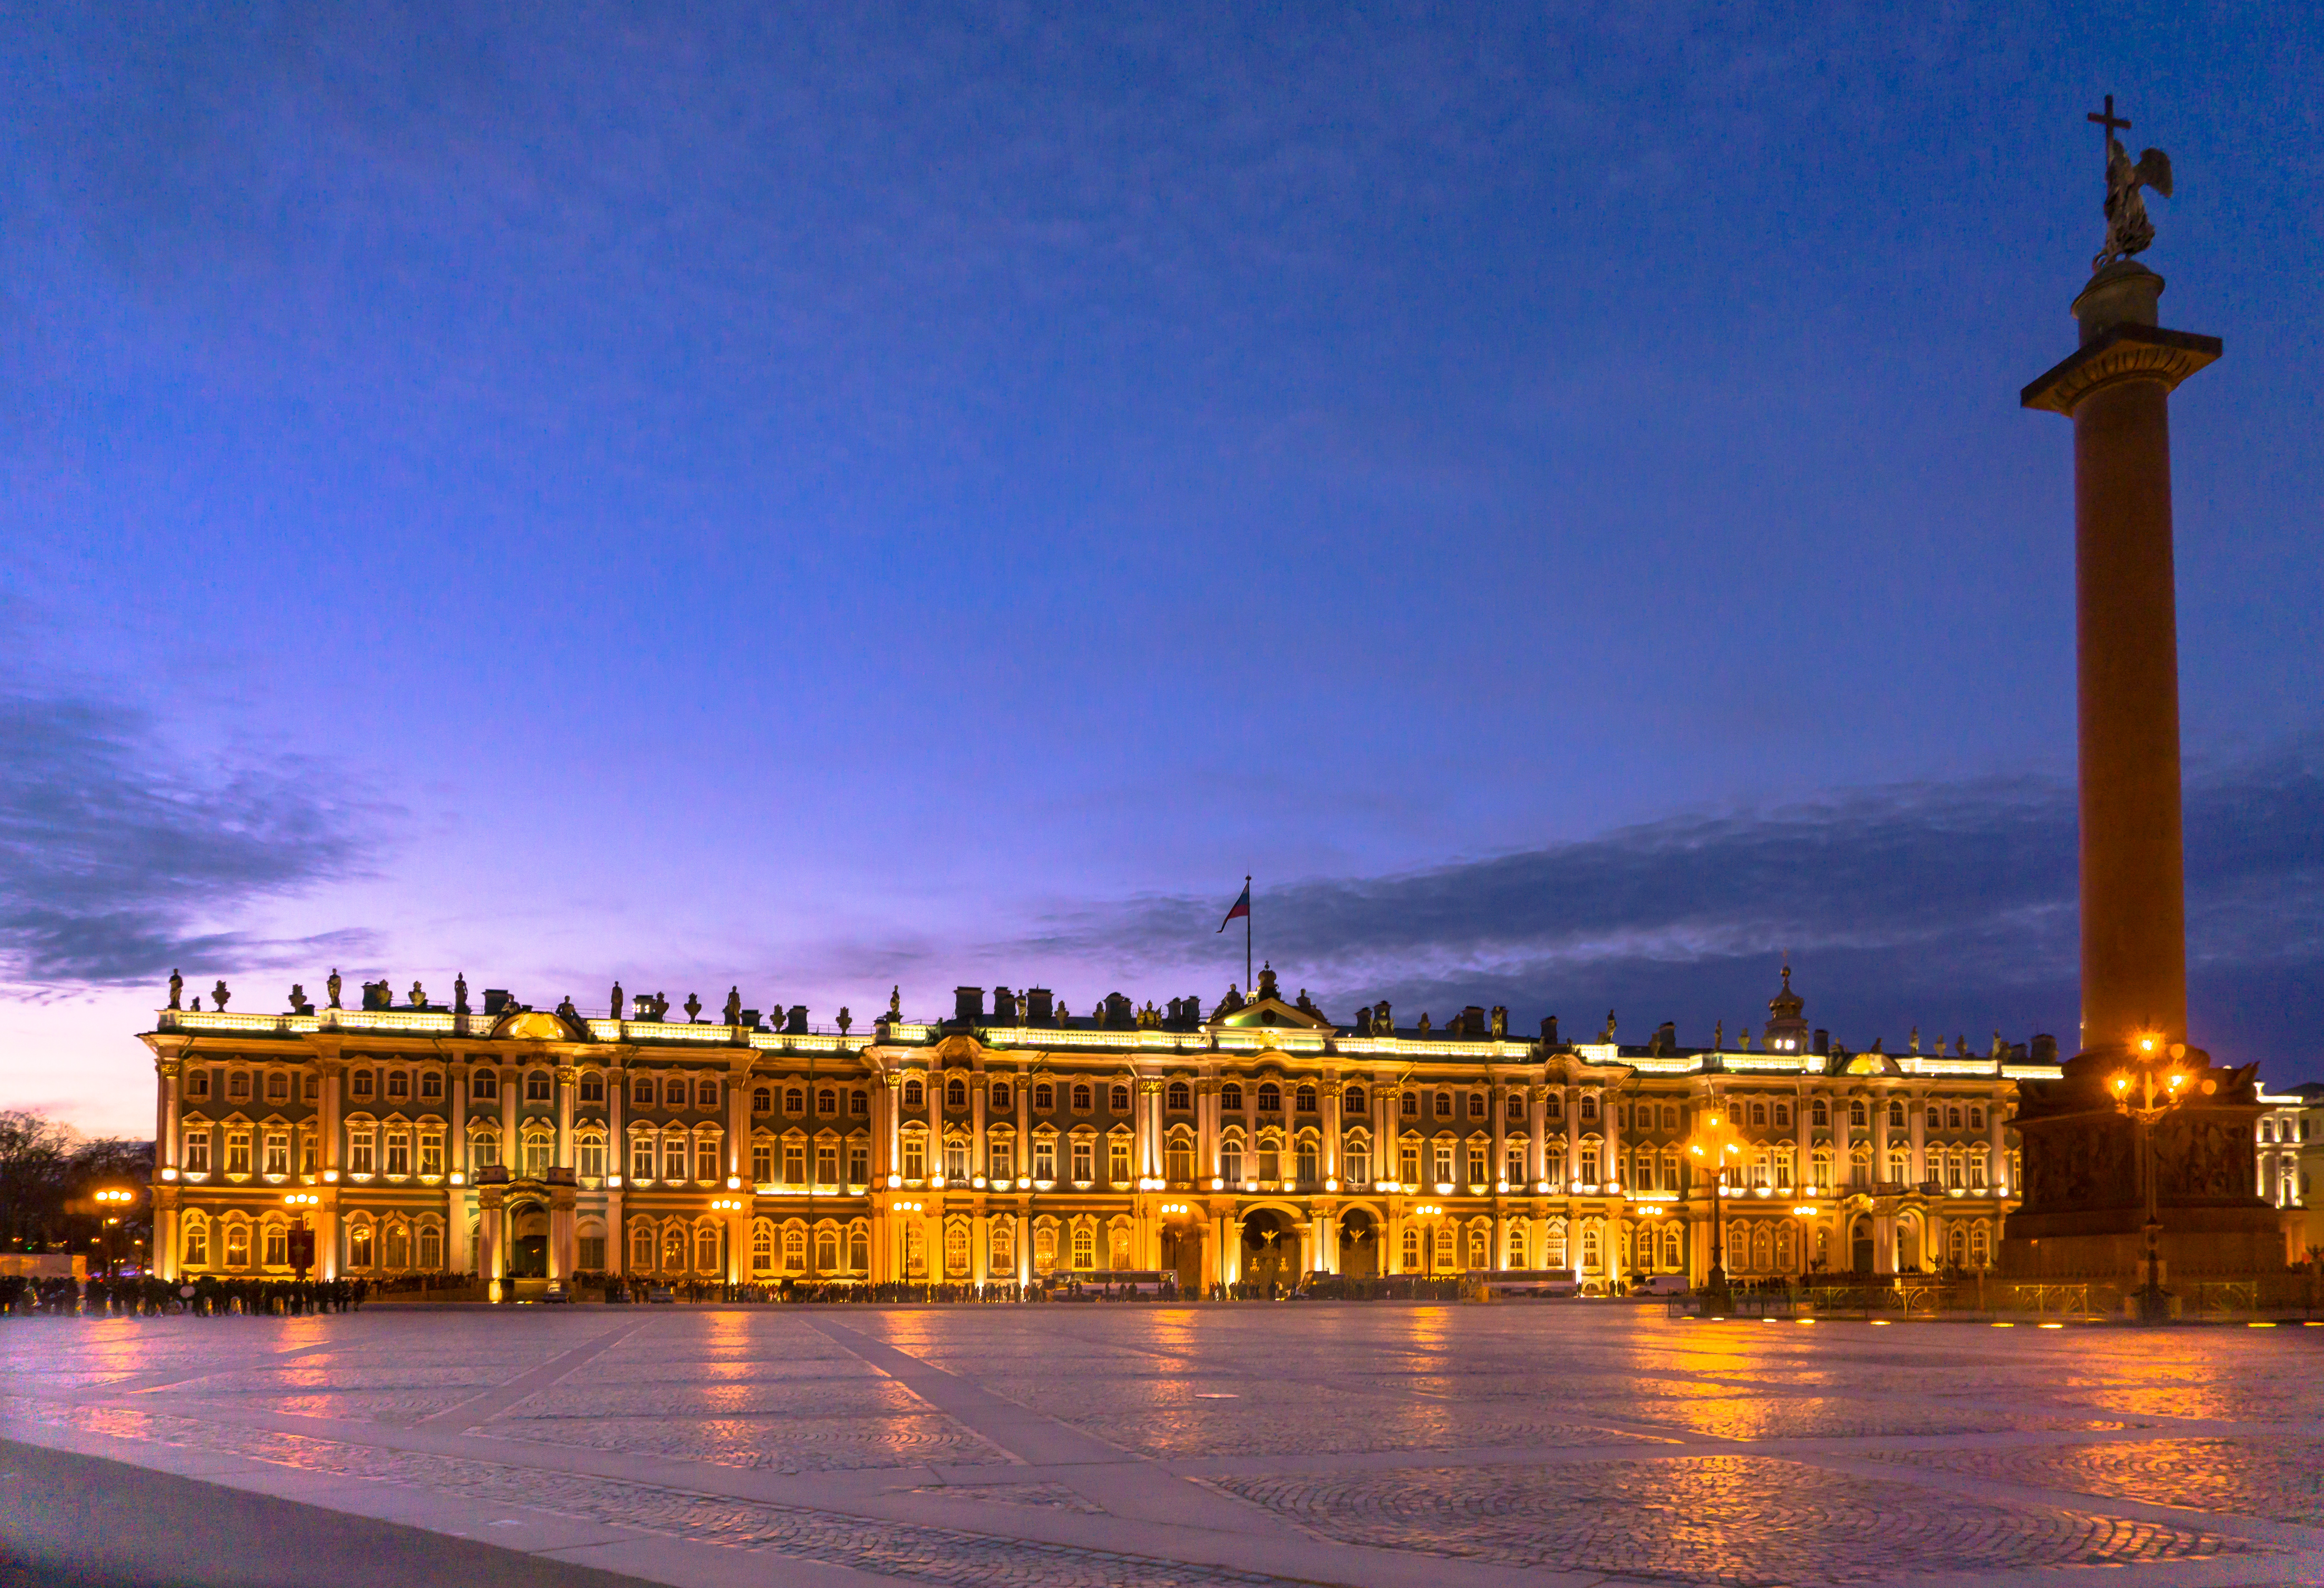 St Petersburg Hermitage at dusk